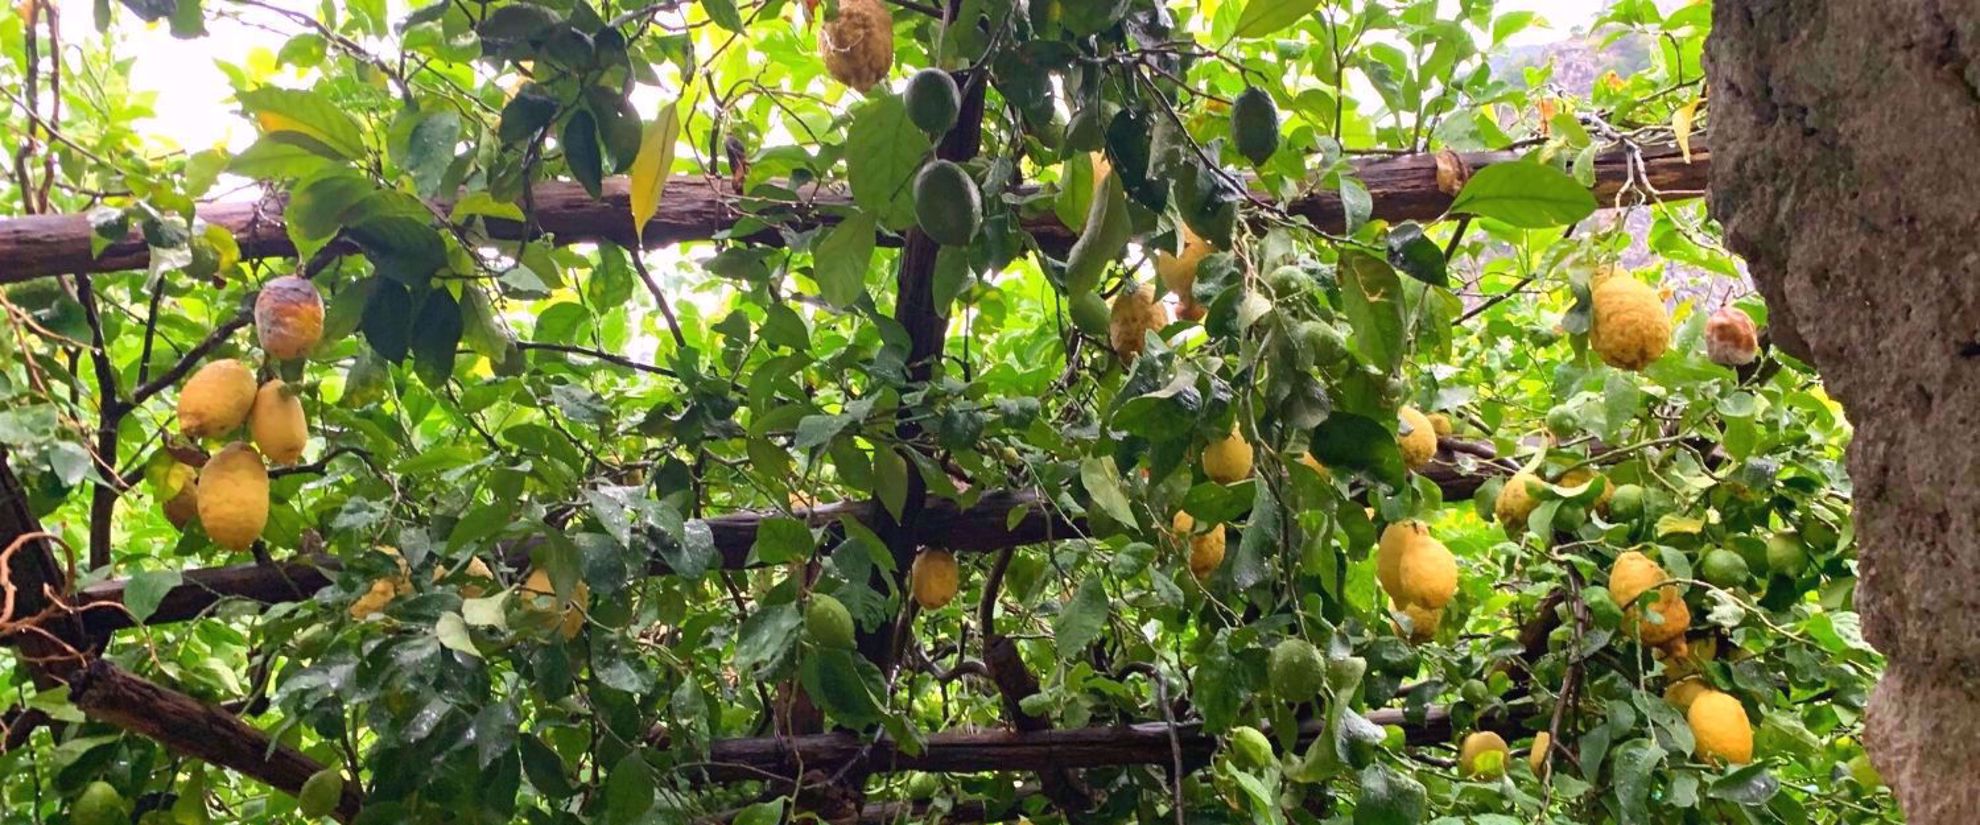 lemon groves of sicily